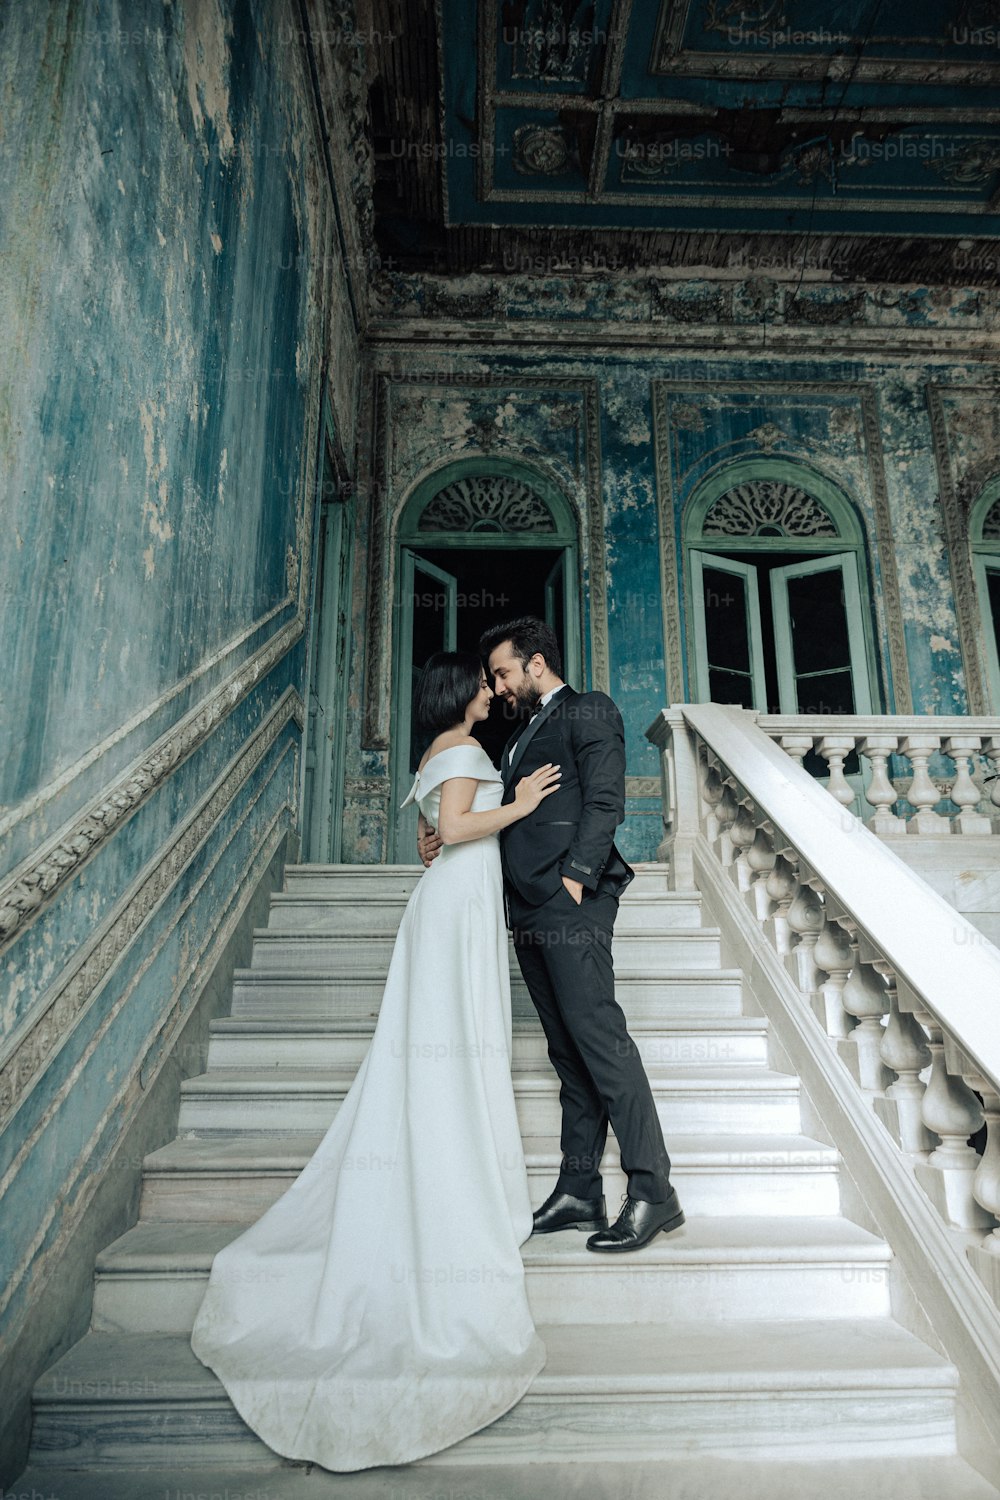 Una novia y un novio besándose en los escalones de un edificio